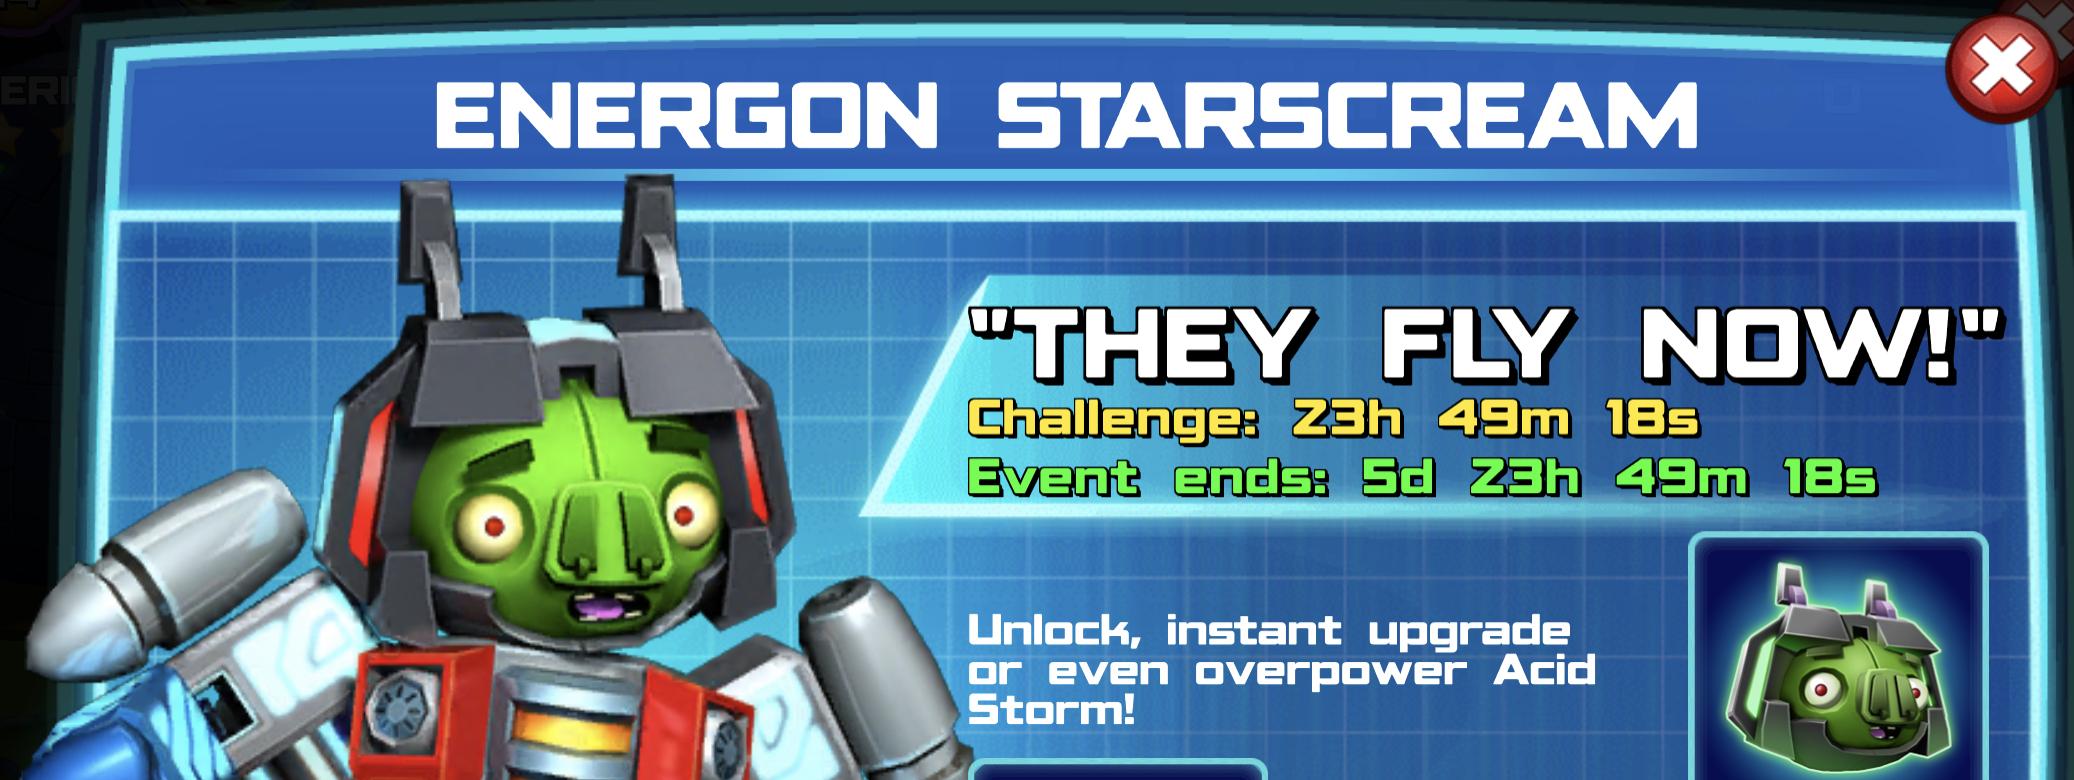 The event banner for Energon Starscream